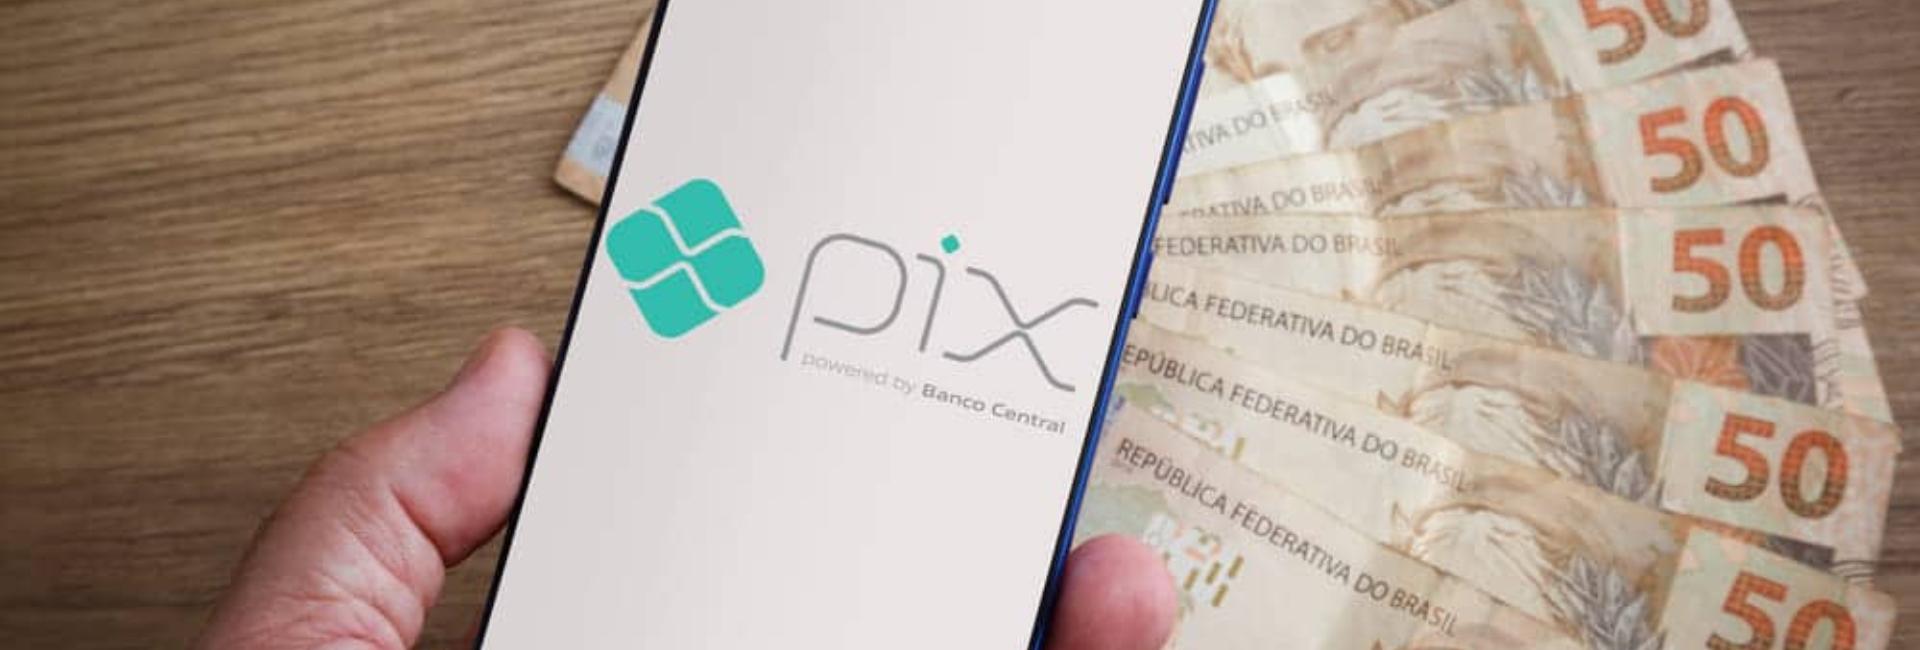 Por causa do Pix, 9 milhões de pessoas abriram contas bancárias no Brasil